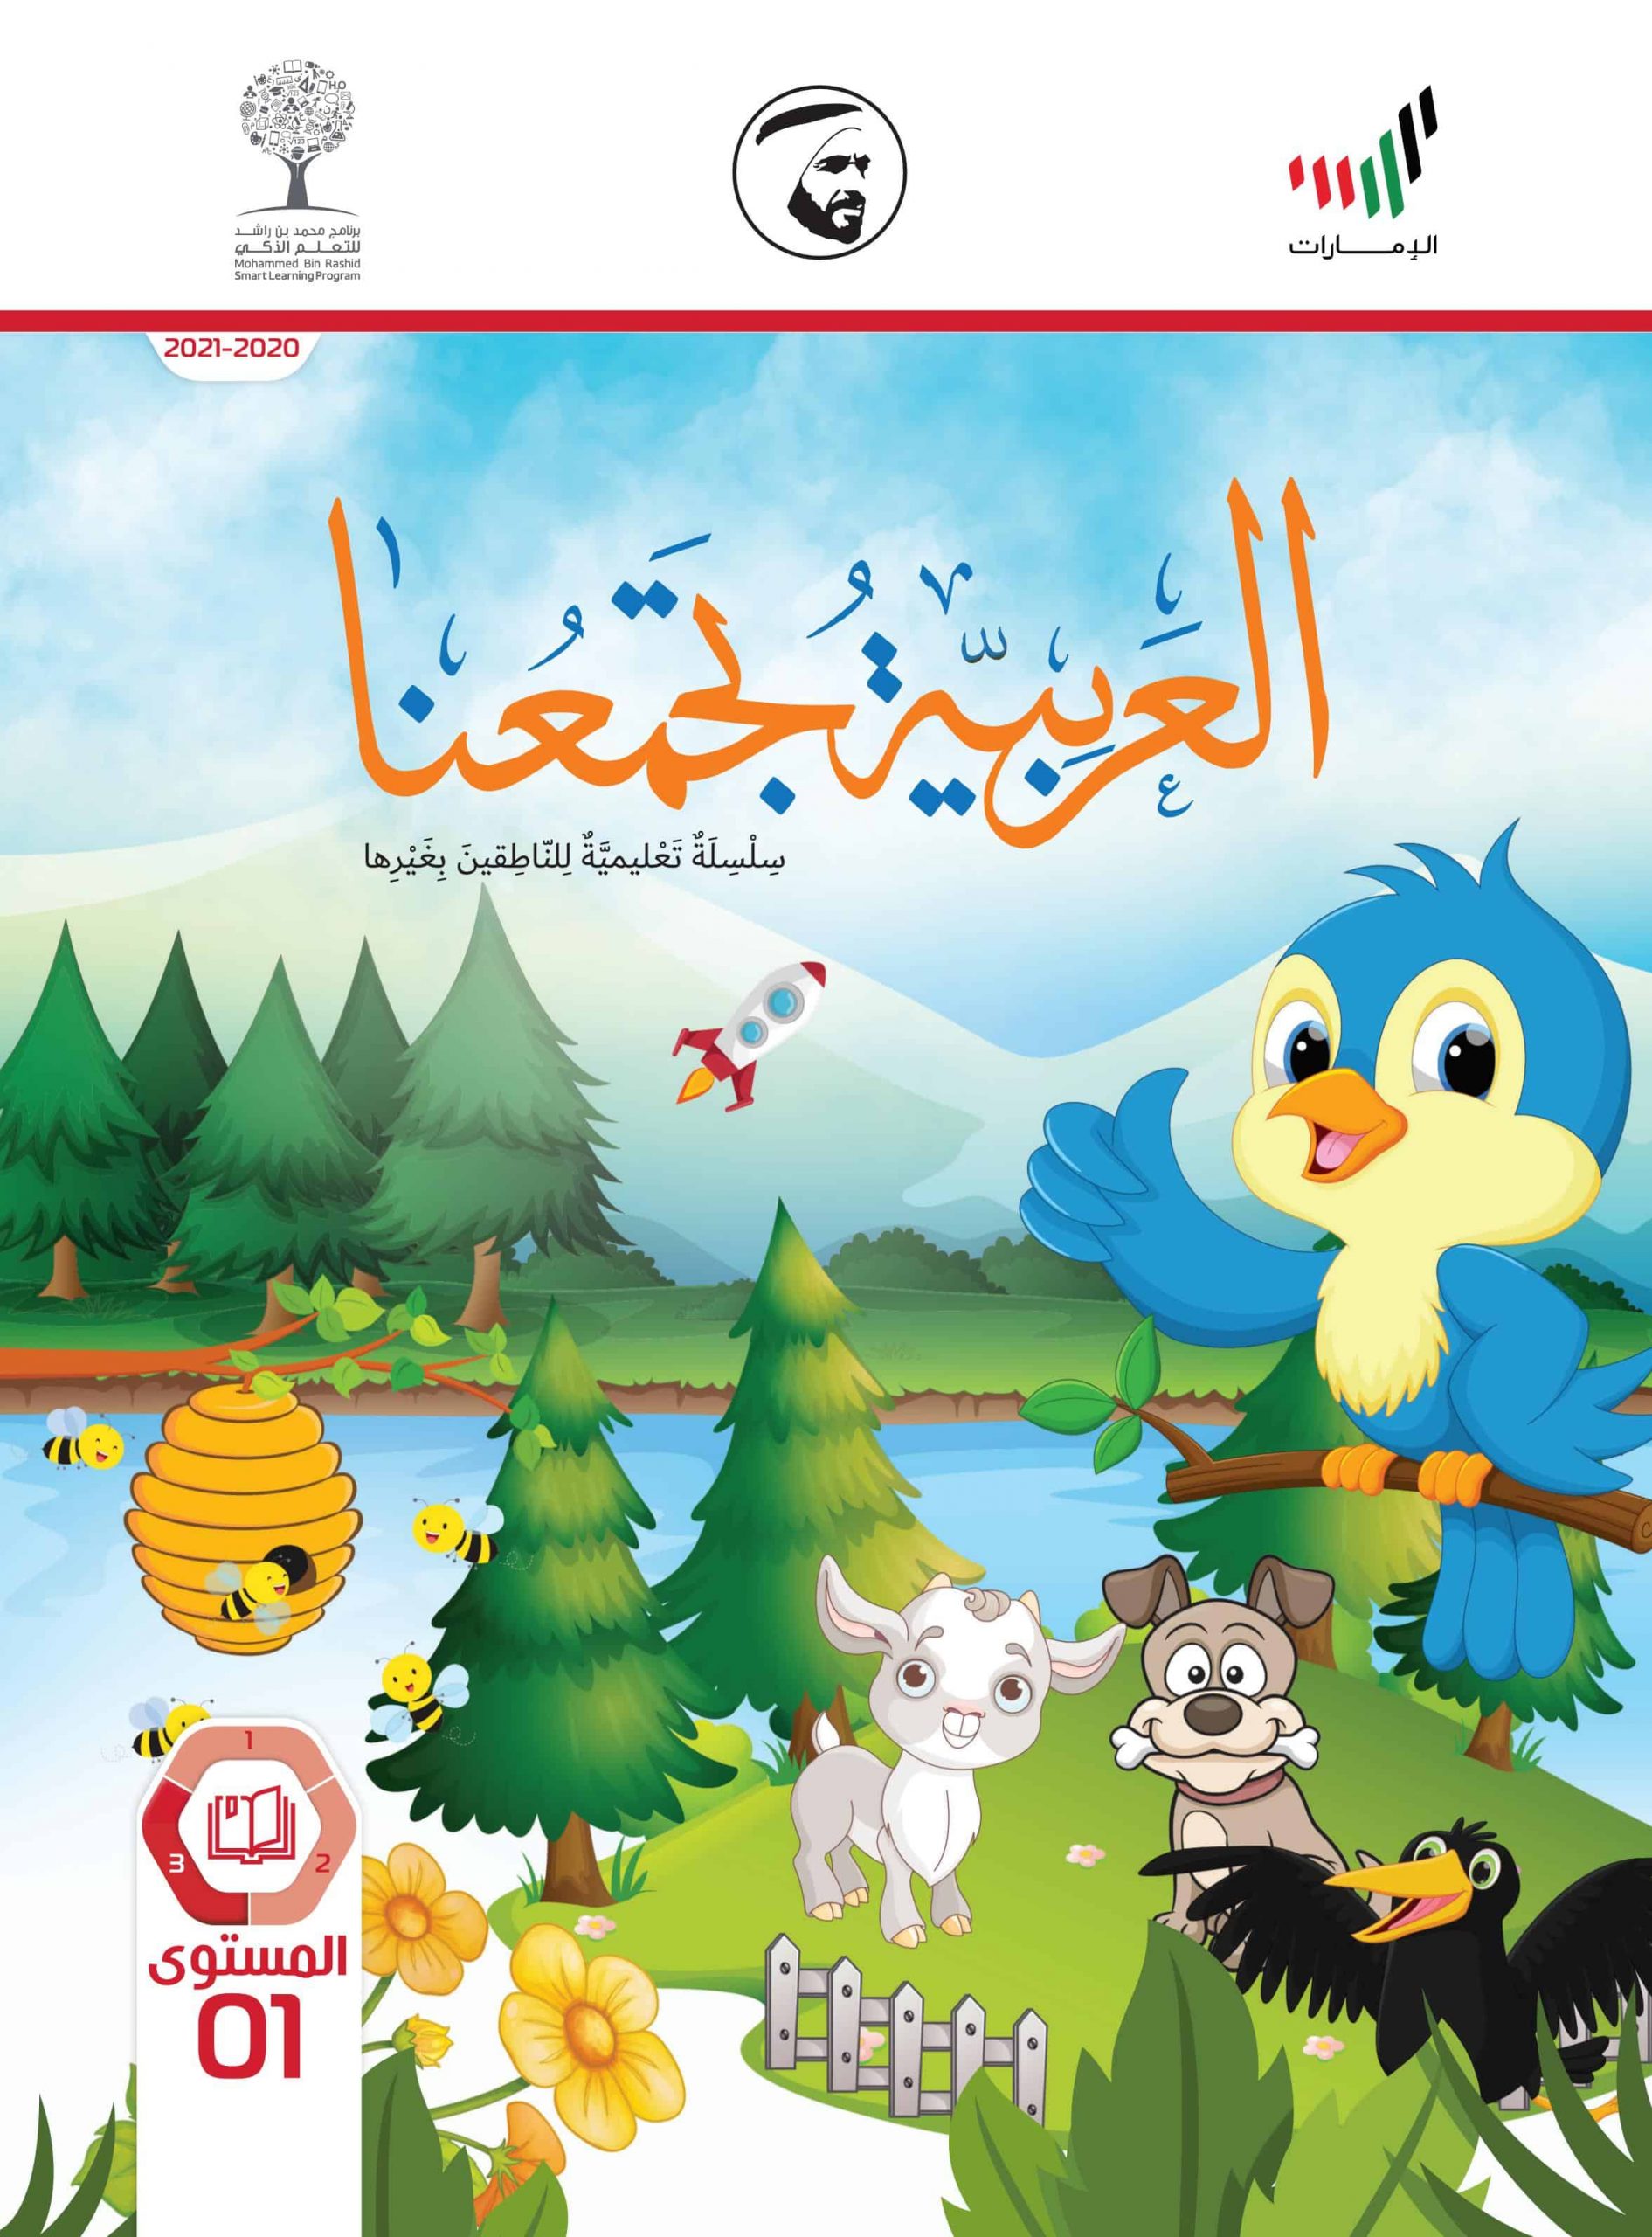 كتاب الطالب لغير الناطقين بها الفصل الدراسي الثالث 2020-2021 الصف الأول مادة اللغة العربية 